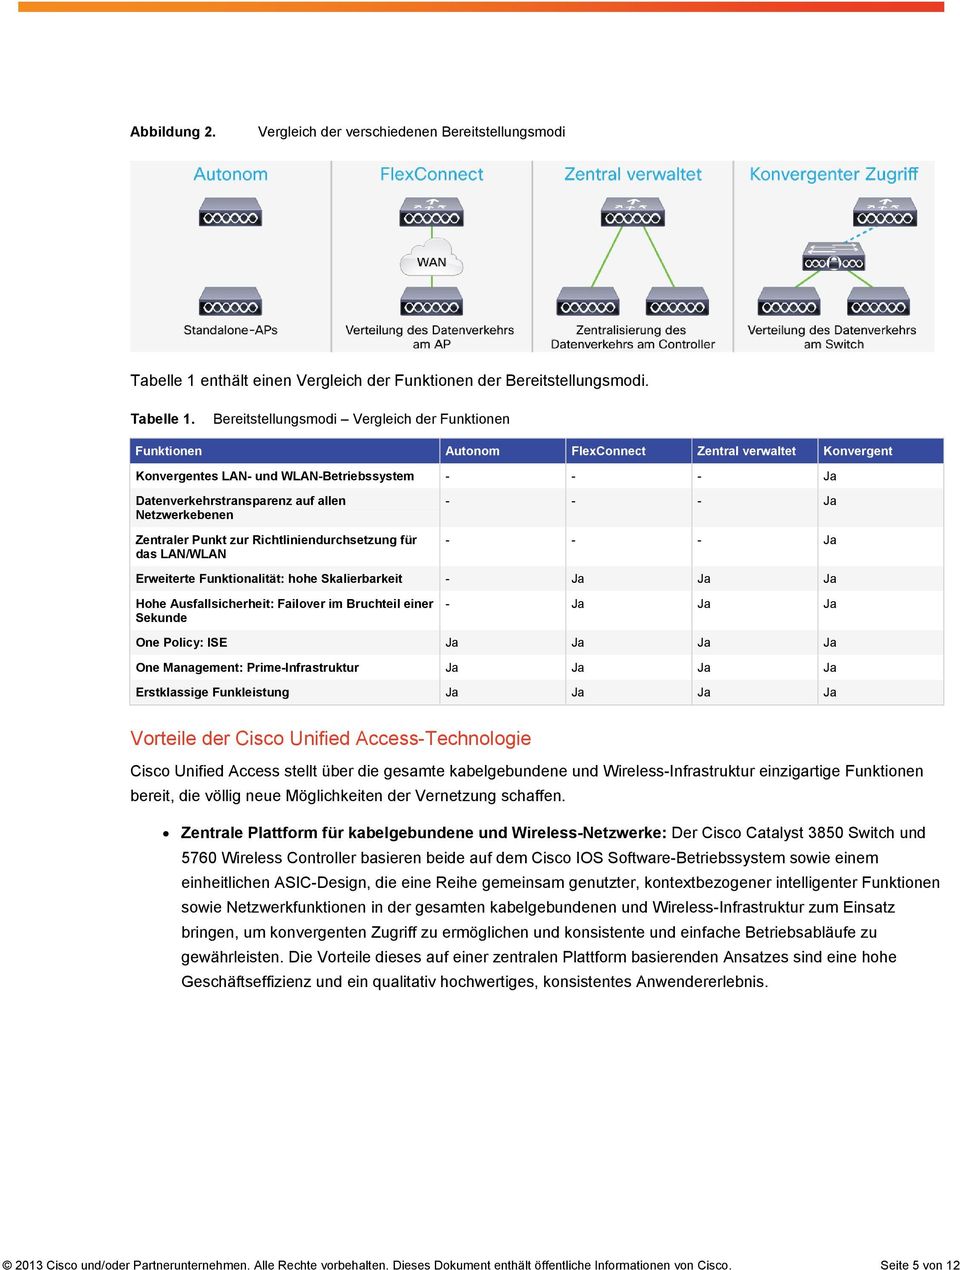 Bereitstellungsmodi Vergleich der Funktionen Funktionen Autonom FlexConnect Zentral verwaltet Konvergent Konvergentes LAN- und WLAN-Betriebssystem - - - Ja Datenverkehrstransparenz auf allen